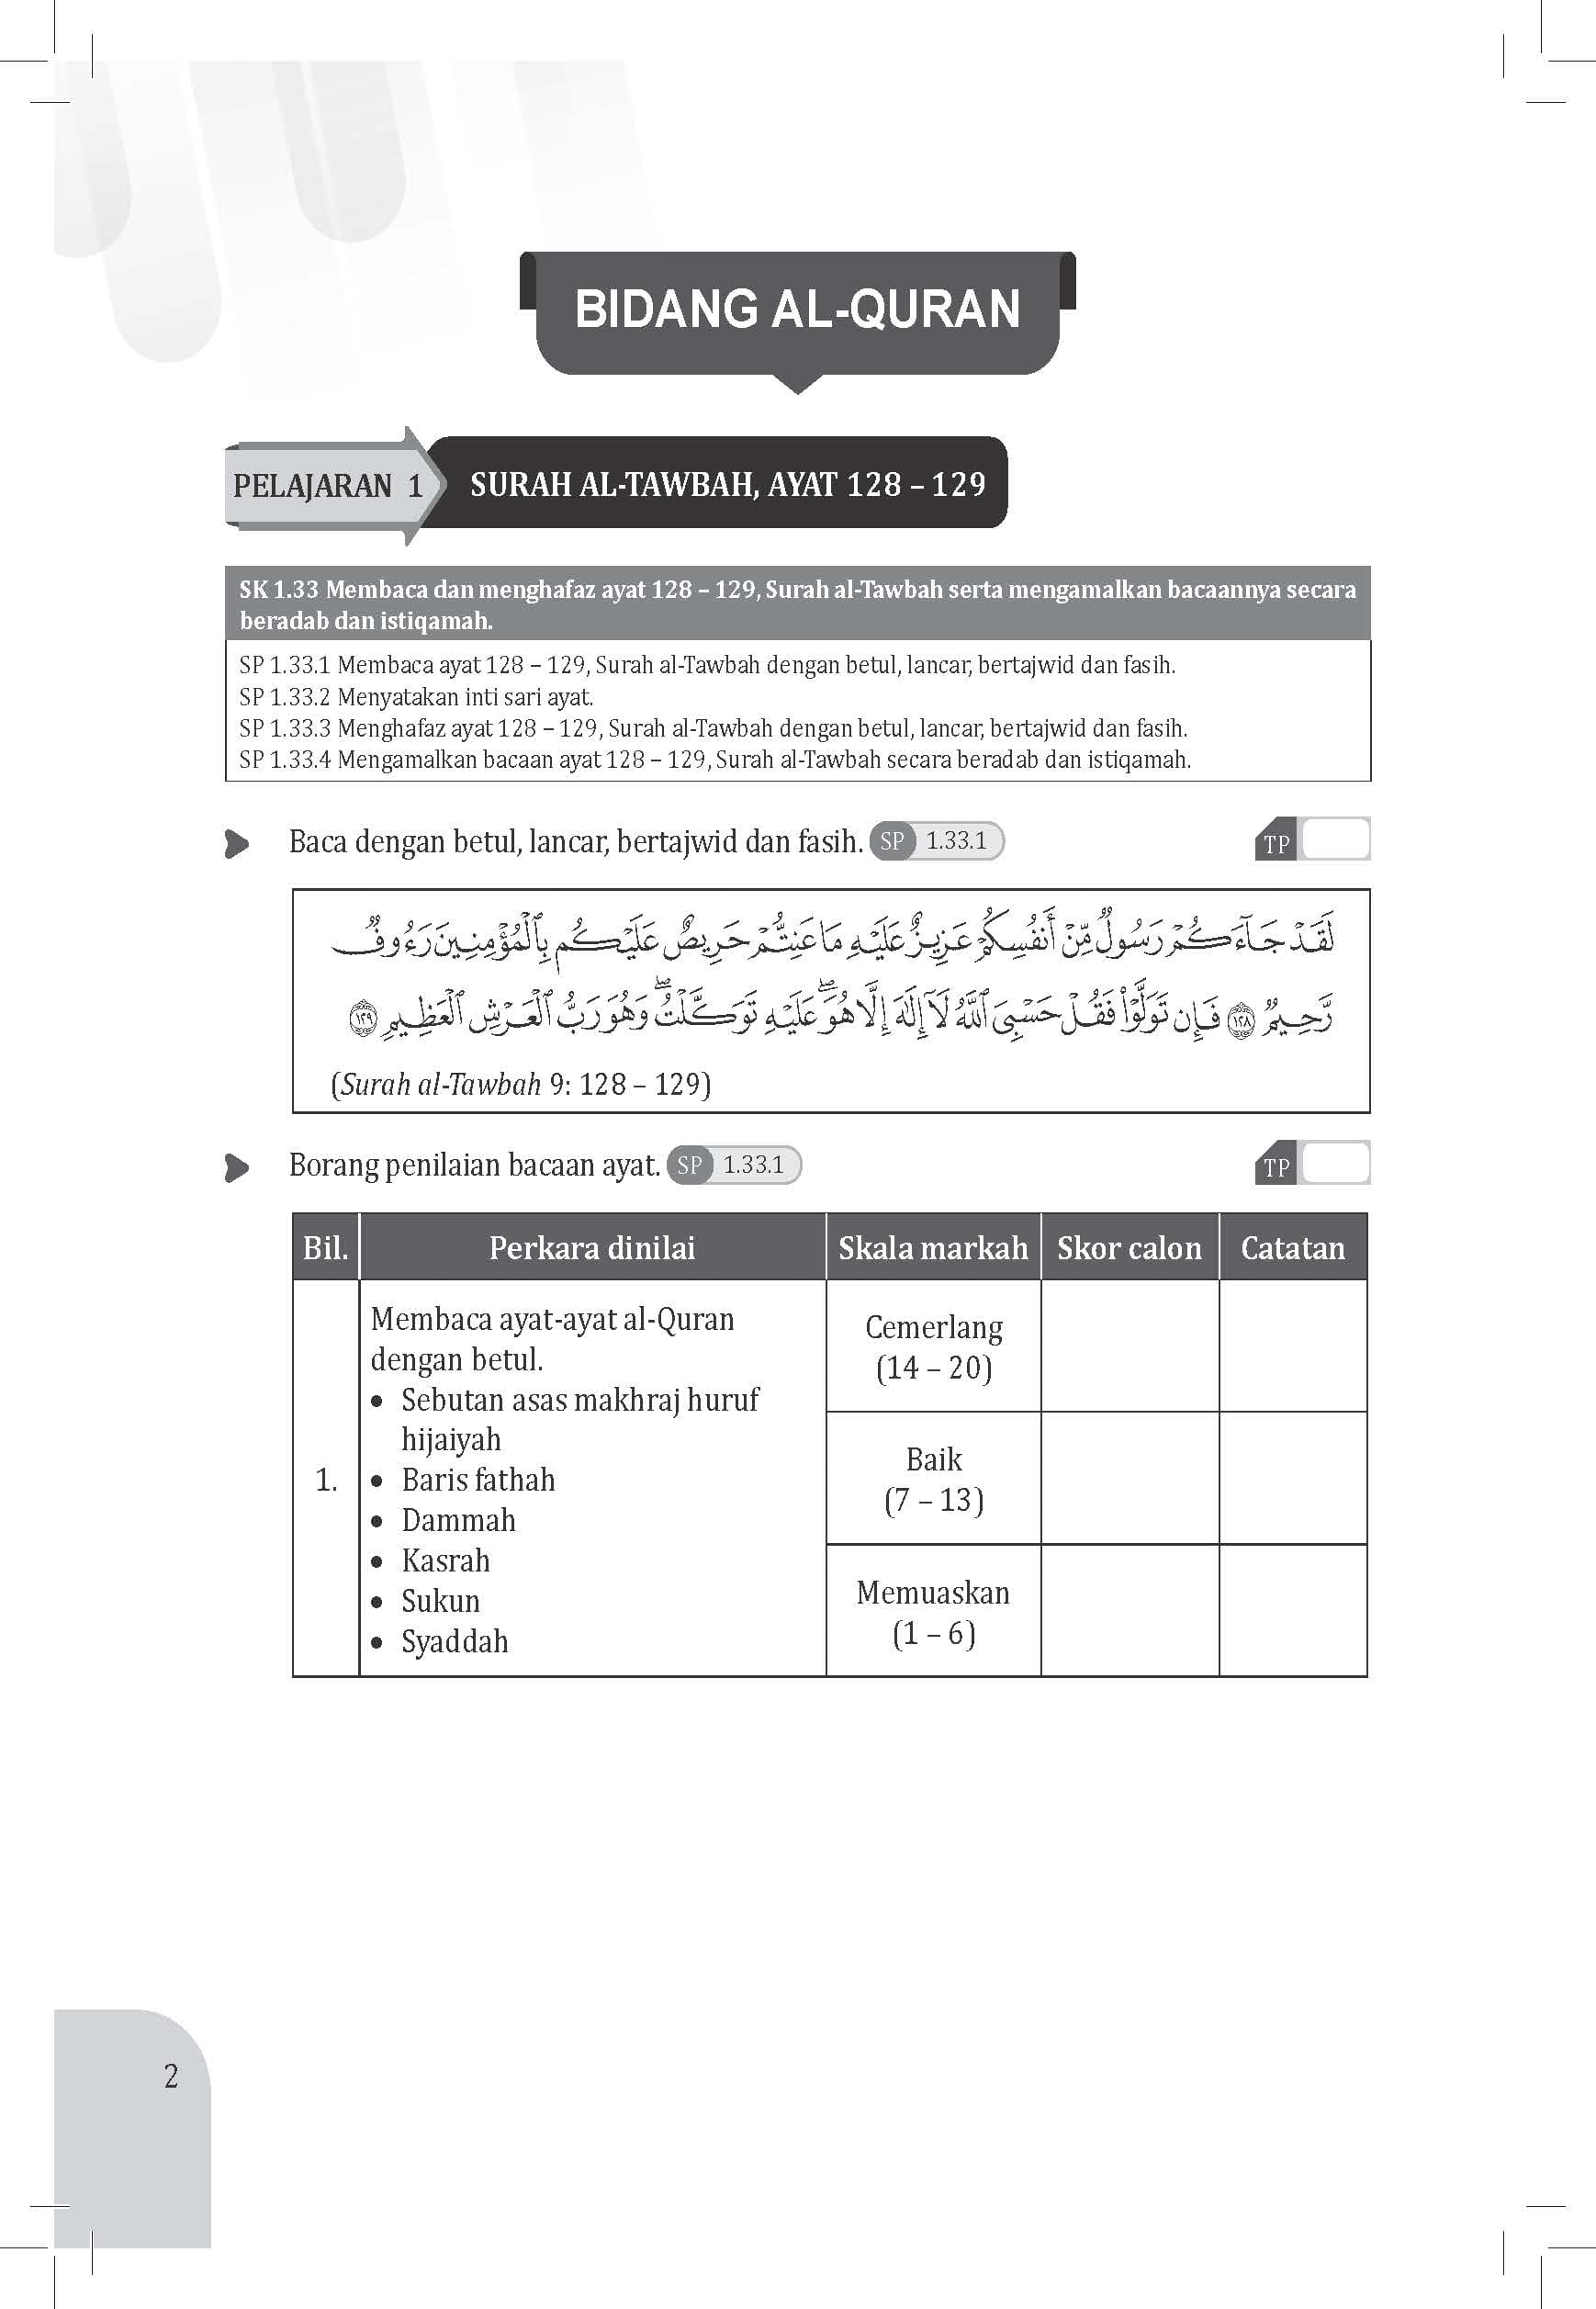 Maximum Practice SPM Latihan Topikal Pendidikan Islam Tingkatan 5 - (TBBS1326)